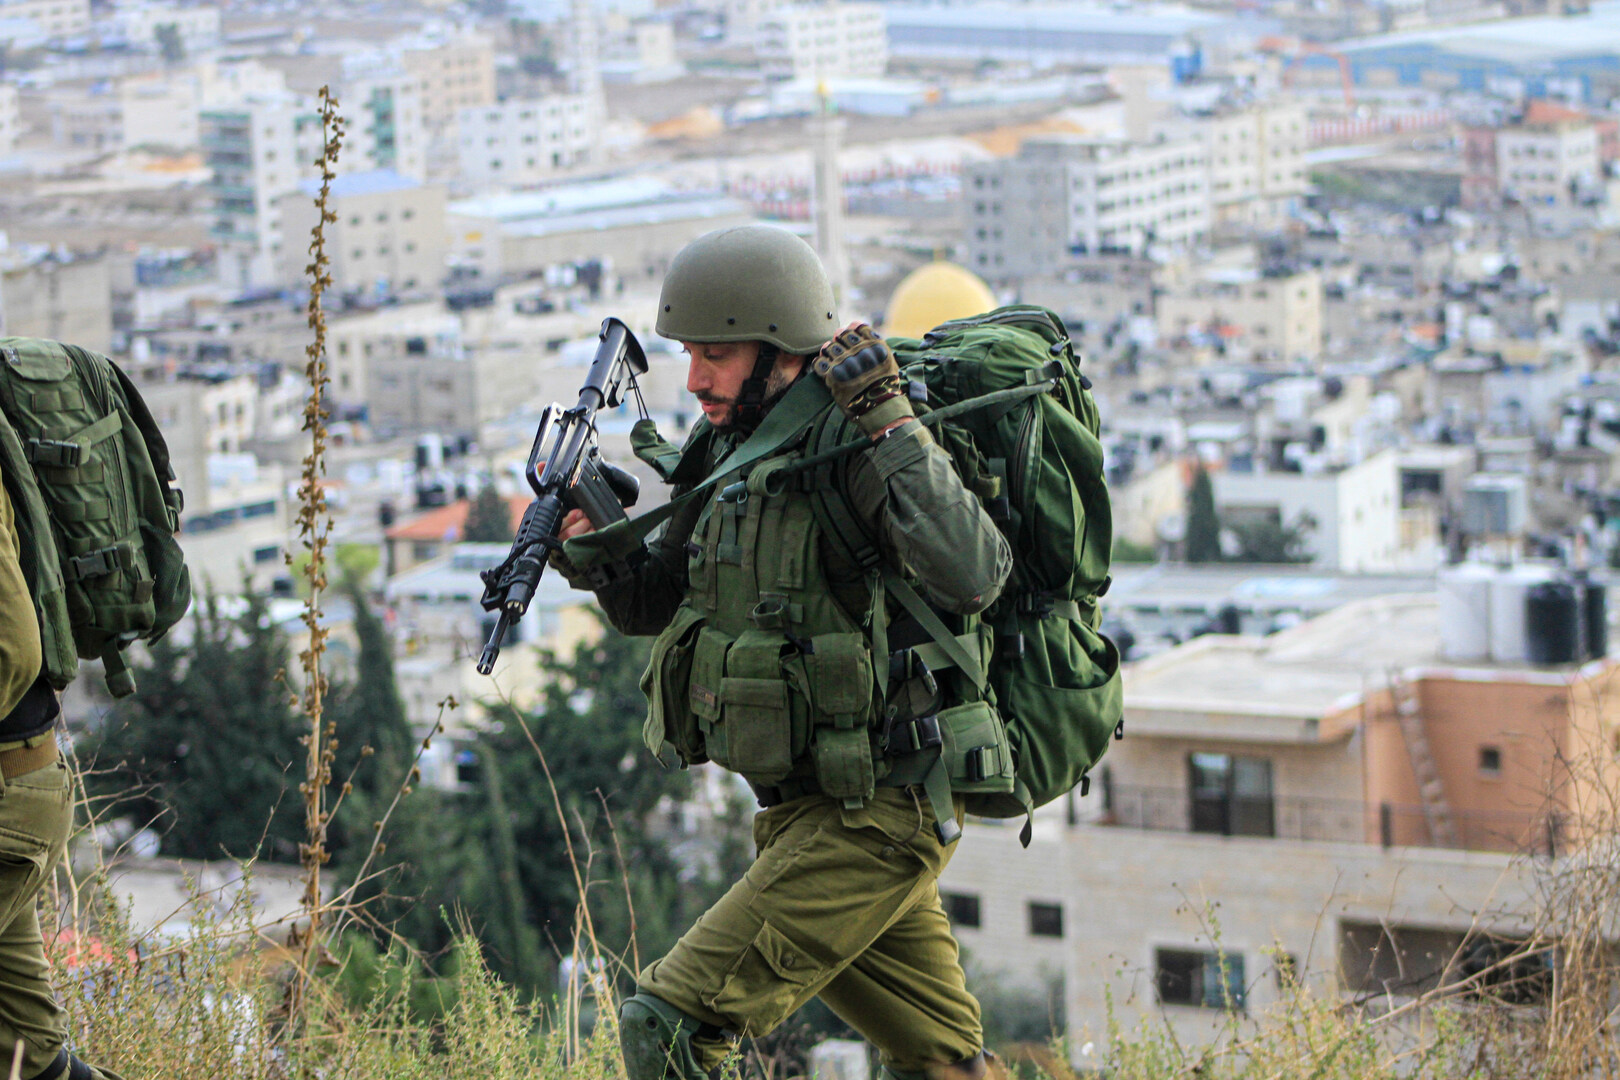 الجيش الإسرائيلي يقتحم منازل منفذي عملية القدس